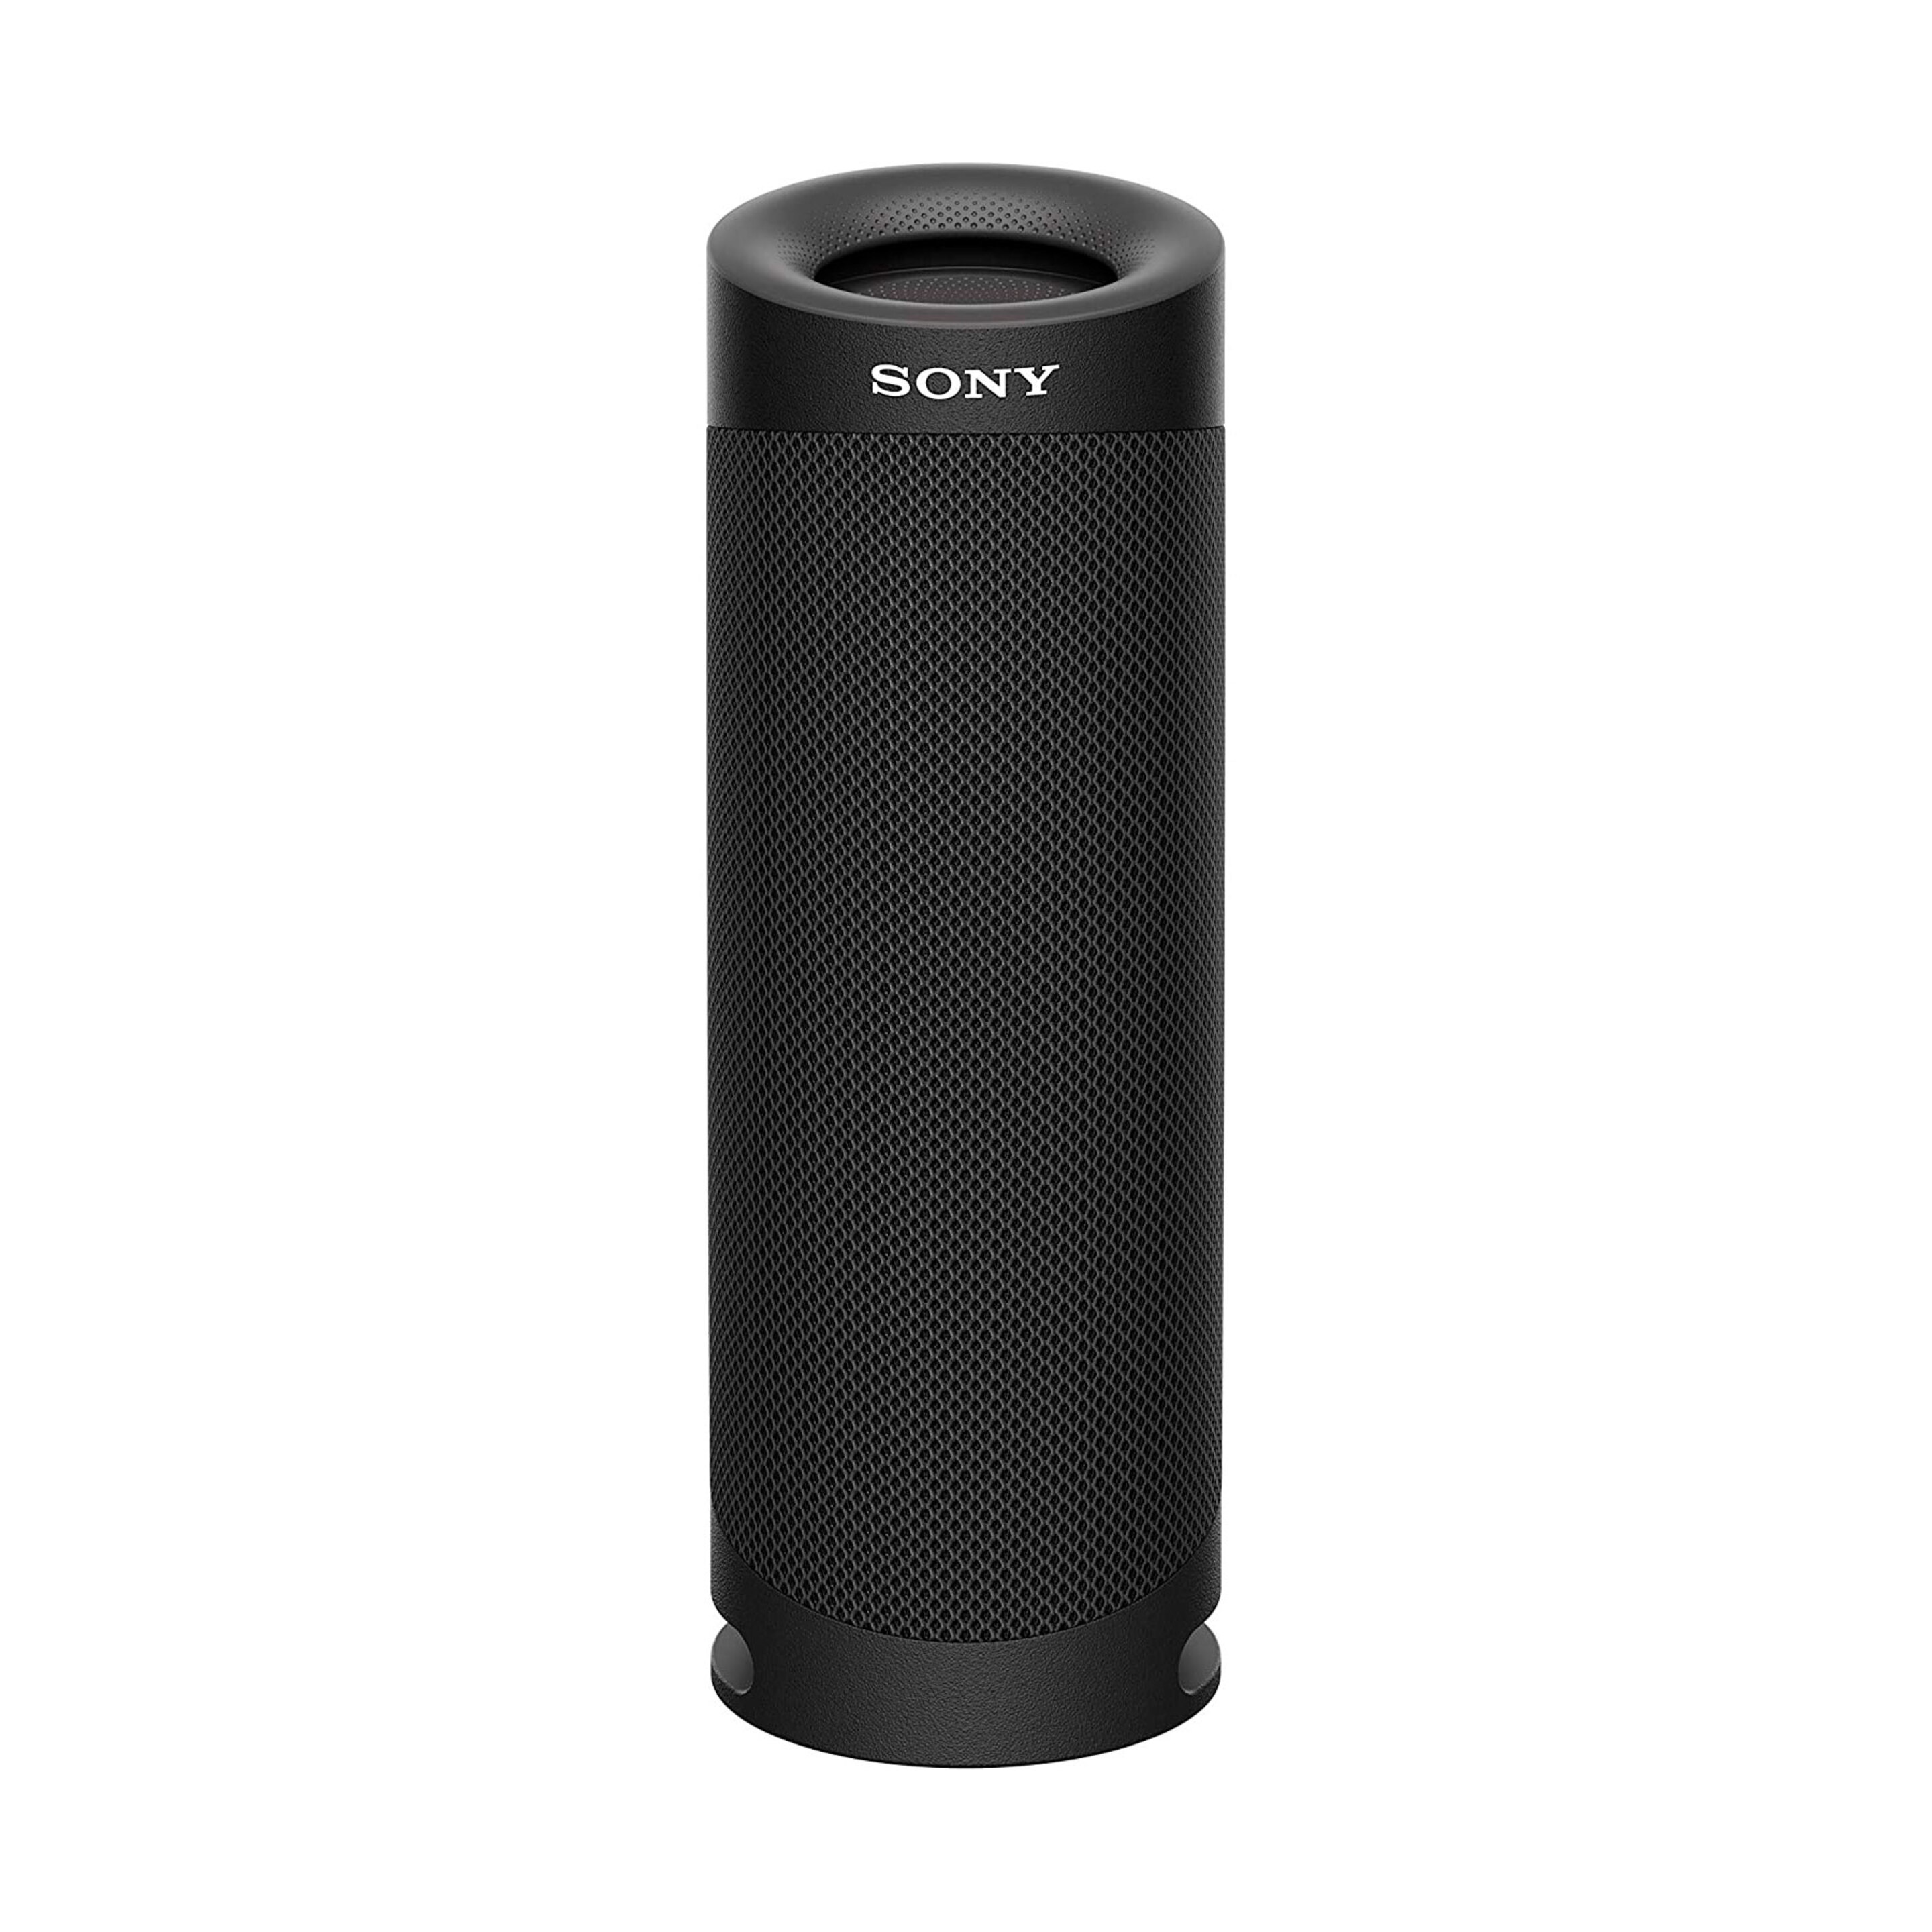 Sony Srs-xb23 Altavoz Portátil Estéreo Negro